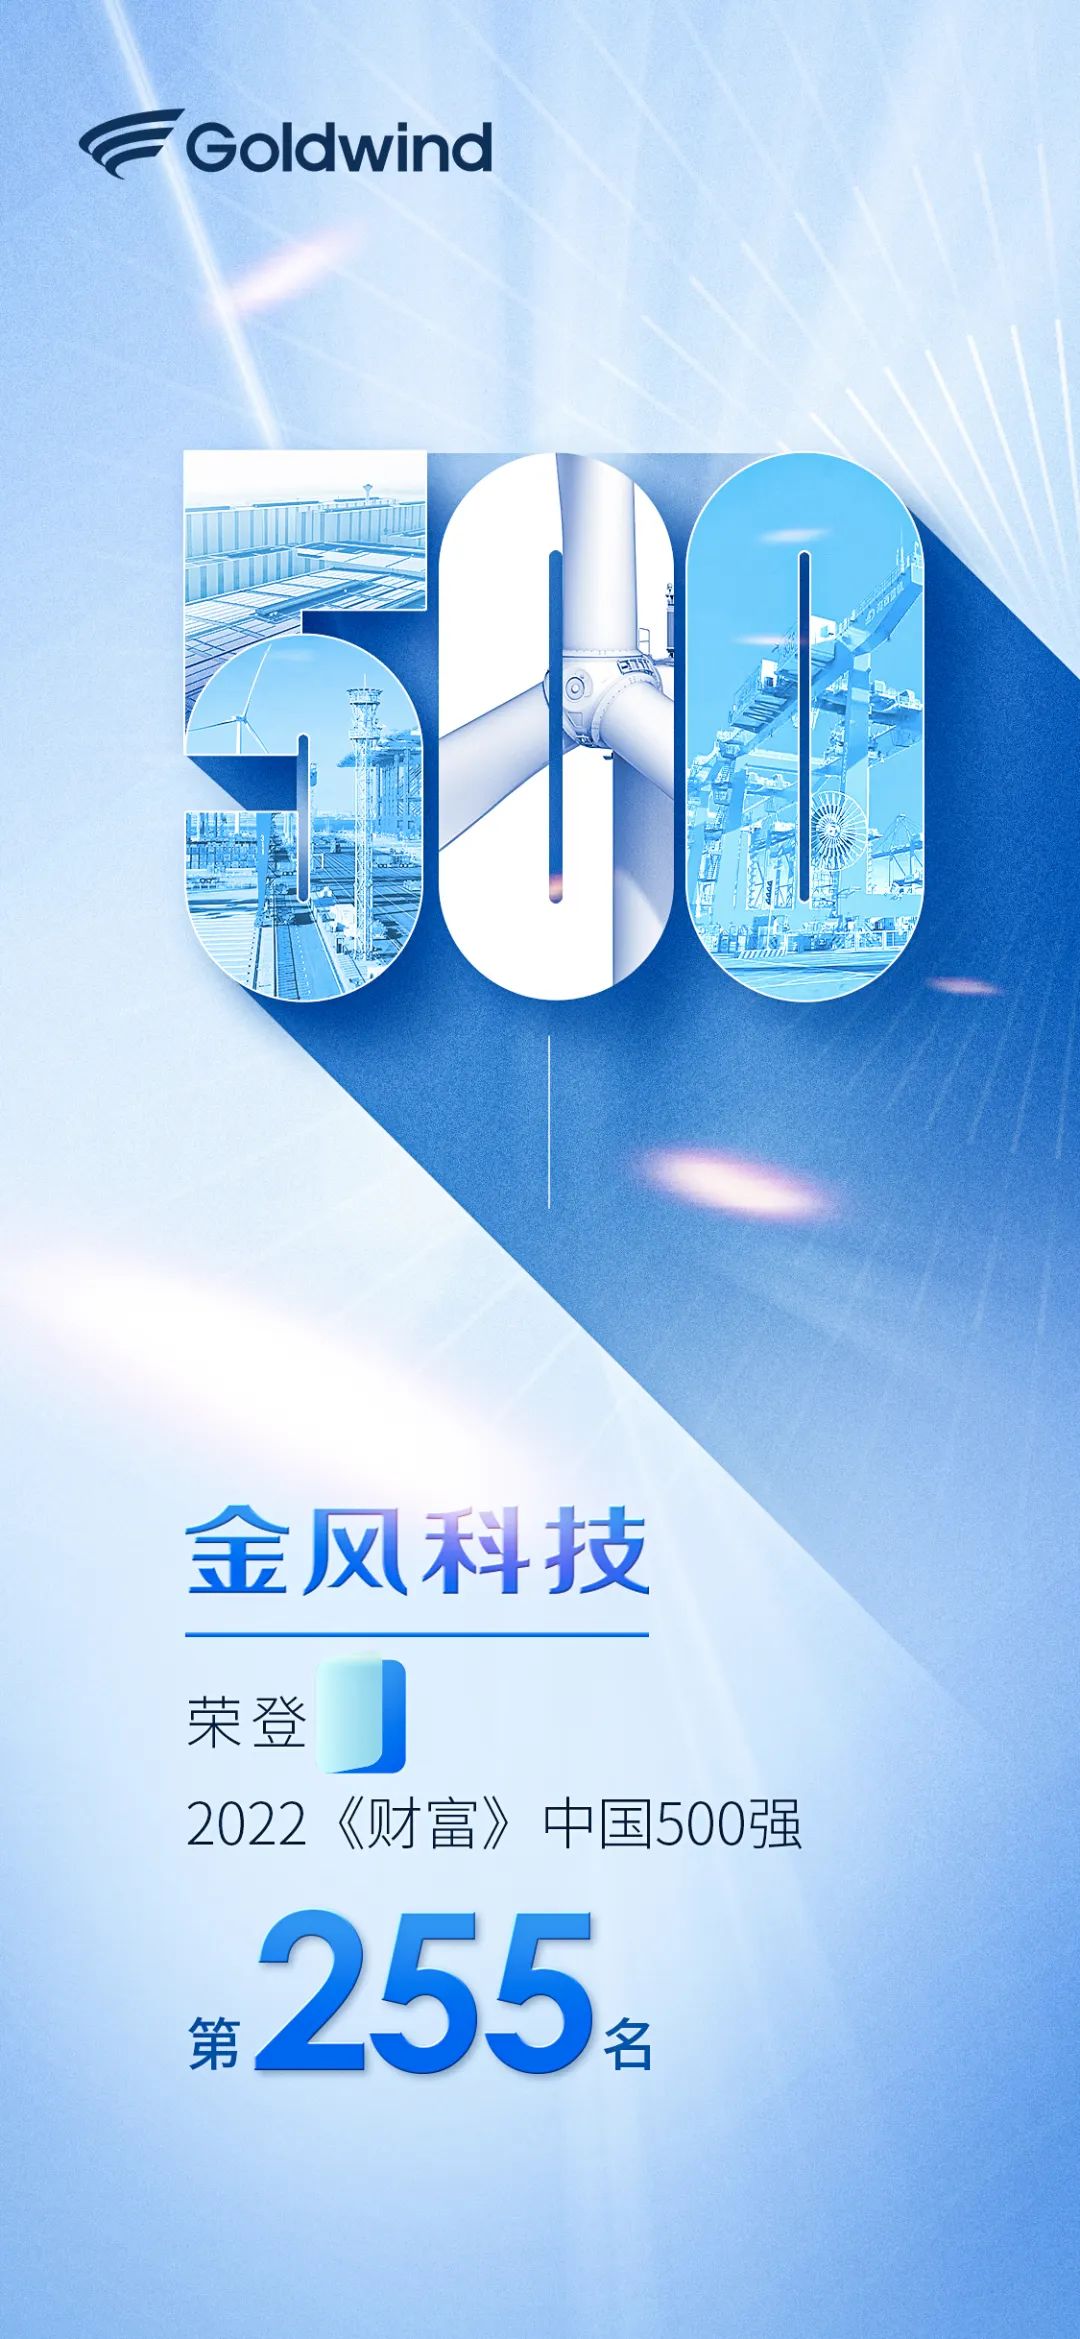 第255位！金风科技连续10年入选《财富》中国500强